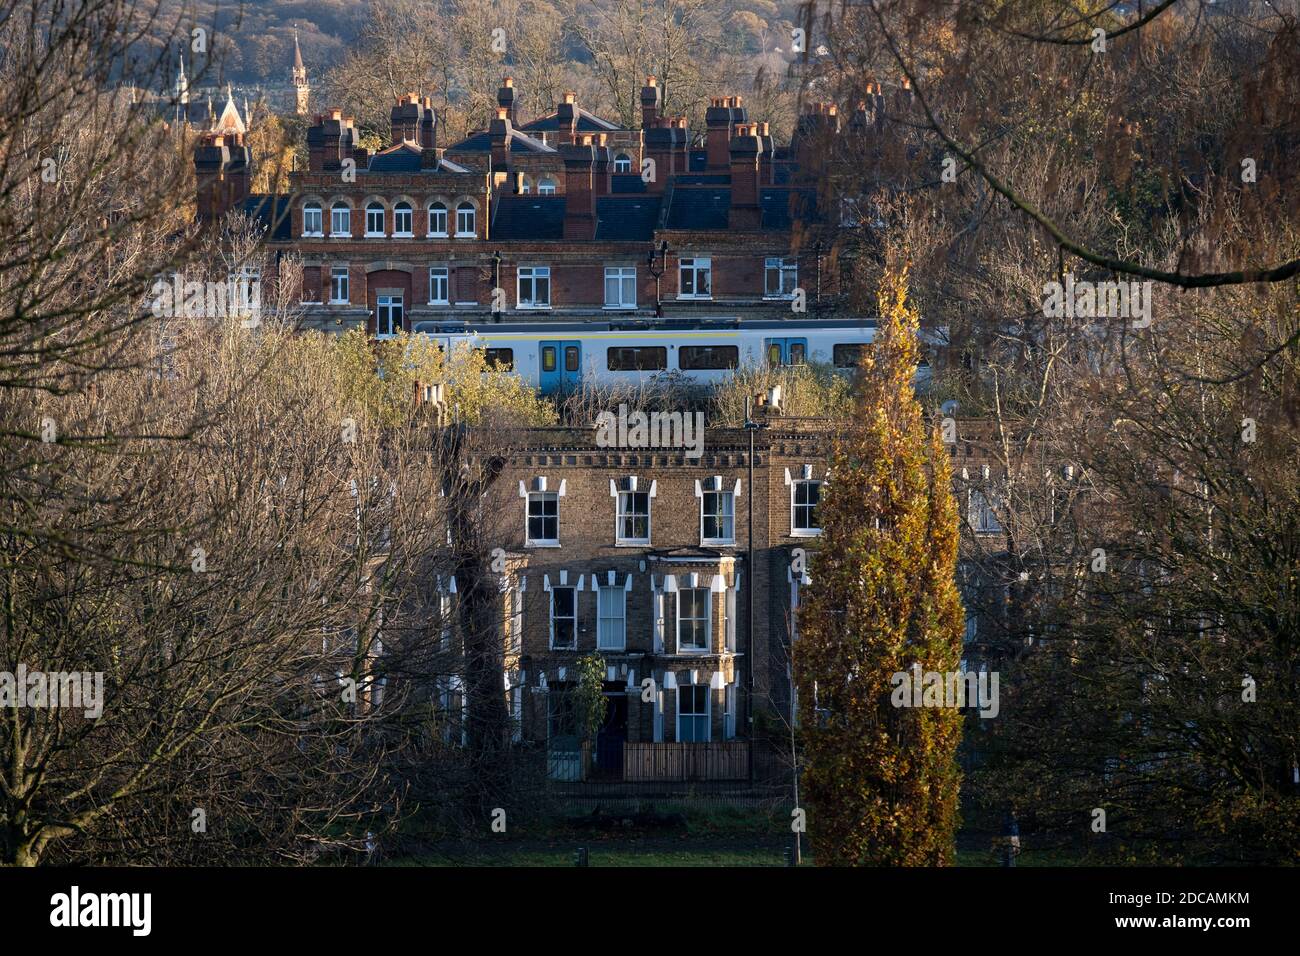 Una carrozza ferroviaria di Thameslink passa attraverso le case a schiera suburbane e appartamenti di epoca vittoriana, visto da Herne Hill's Brockwell Park, il 19 novembre 2020, a Lambeth, Londra, Inghilterra. Foto Stock